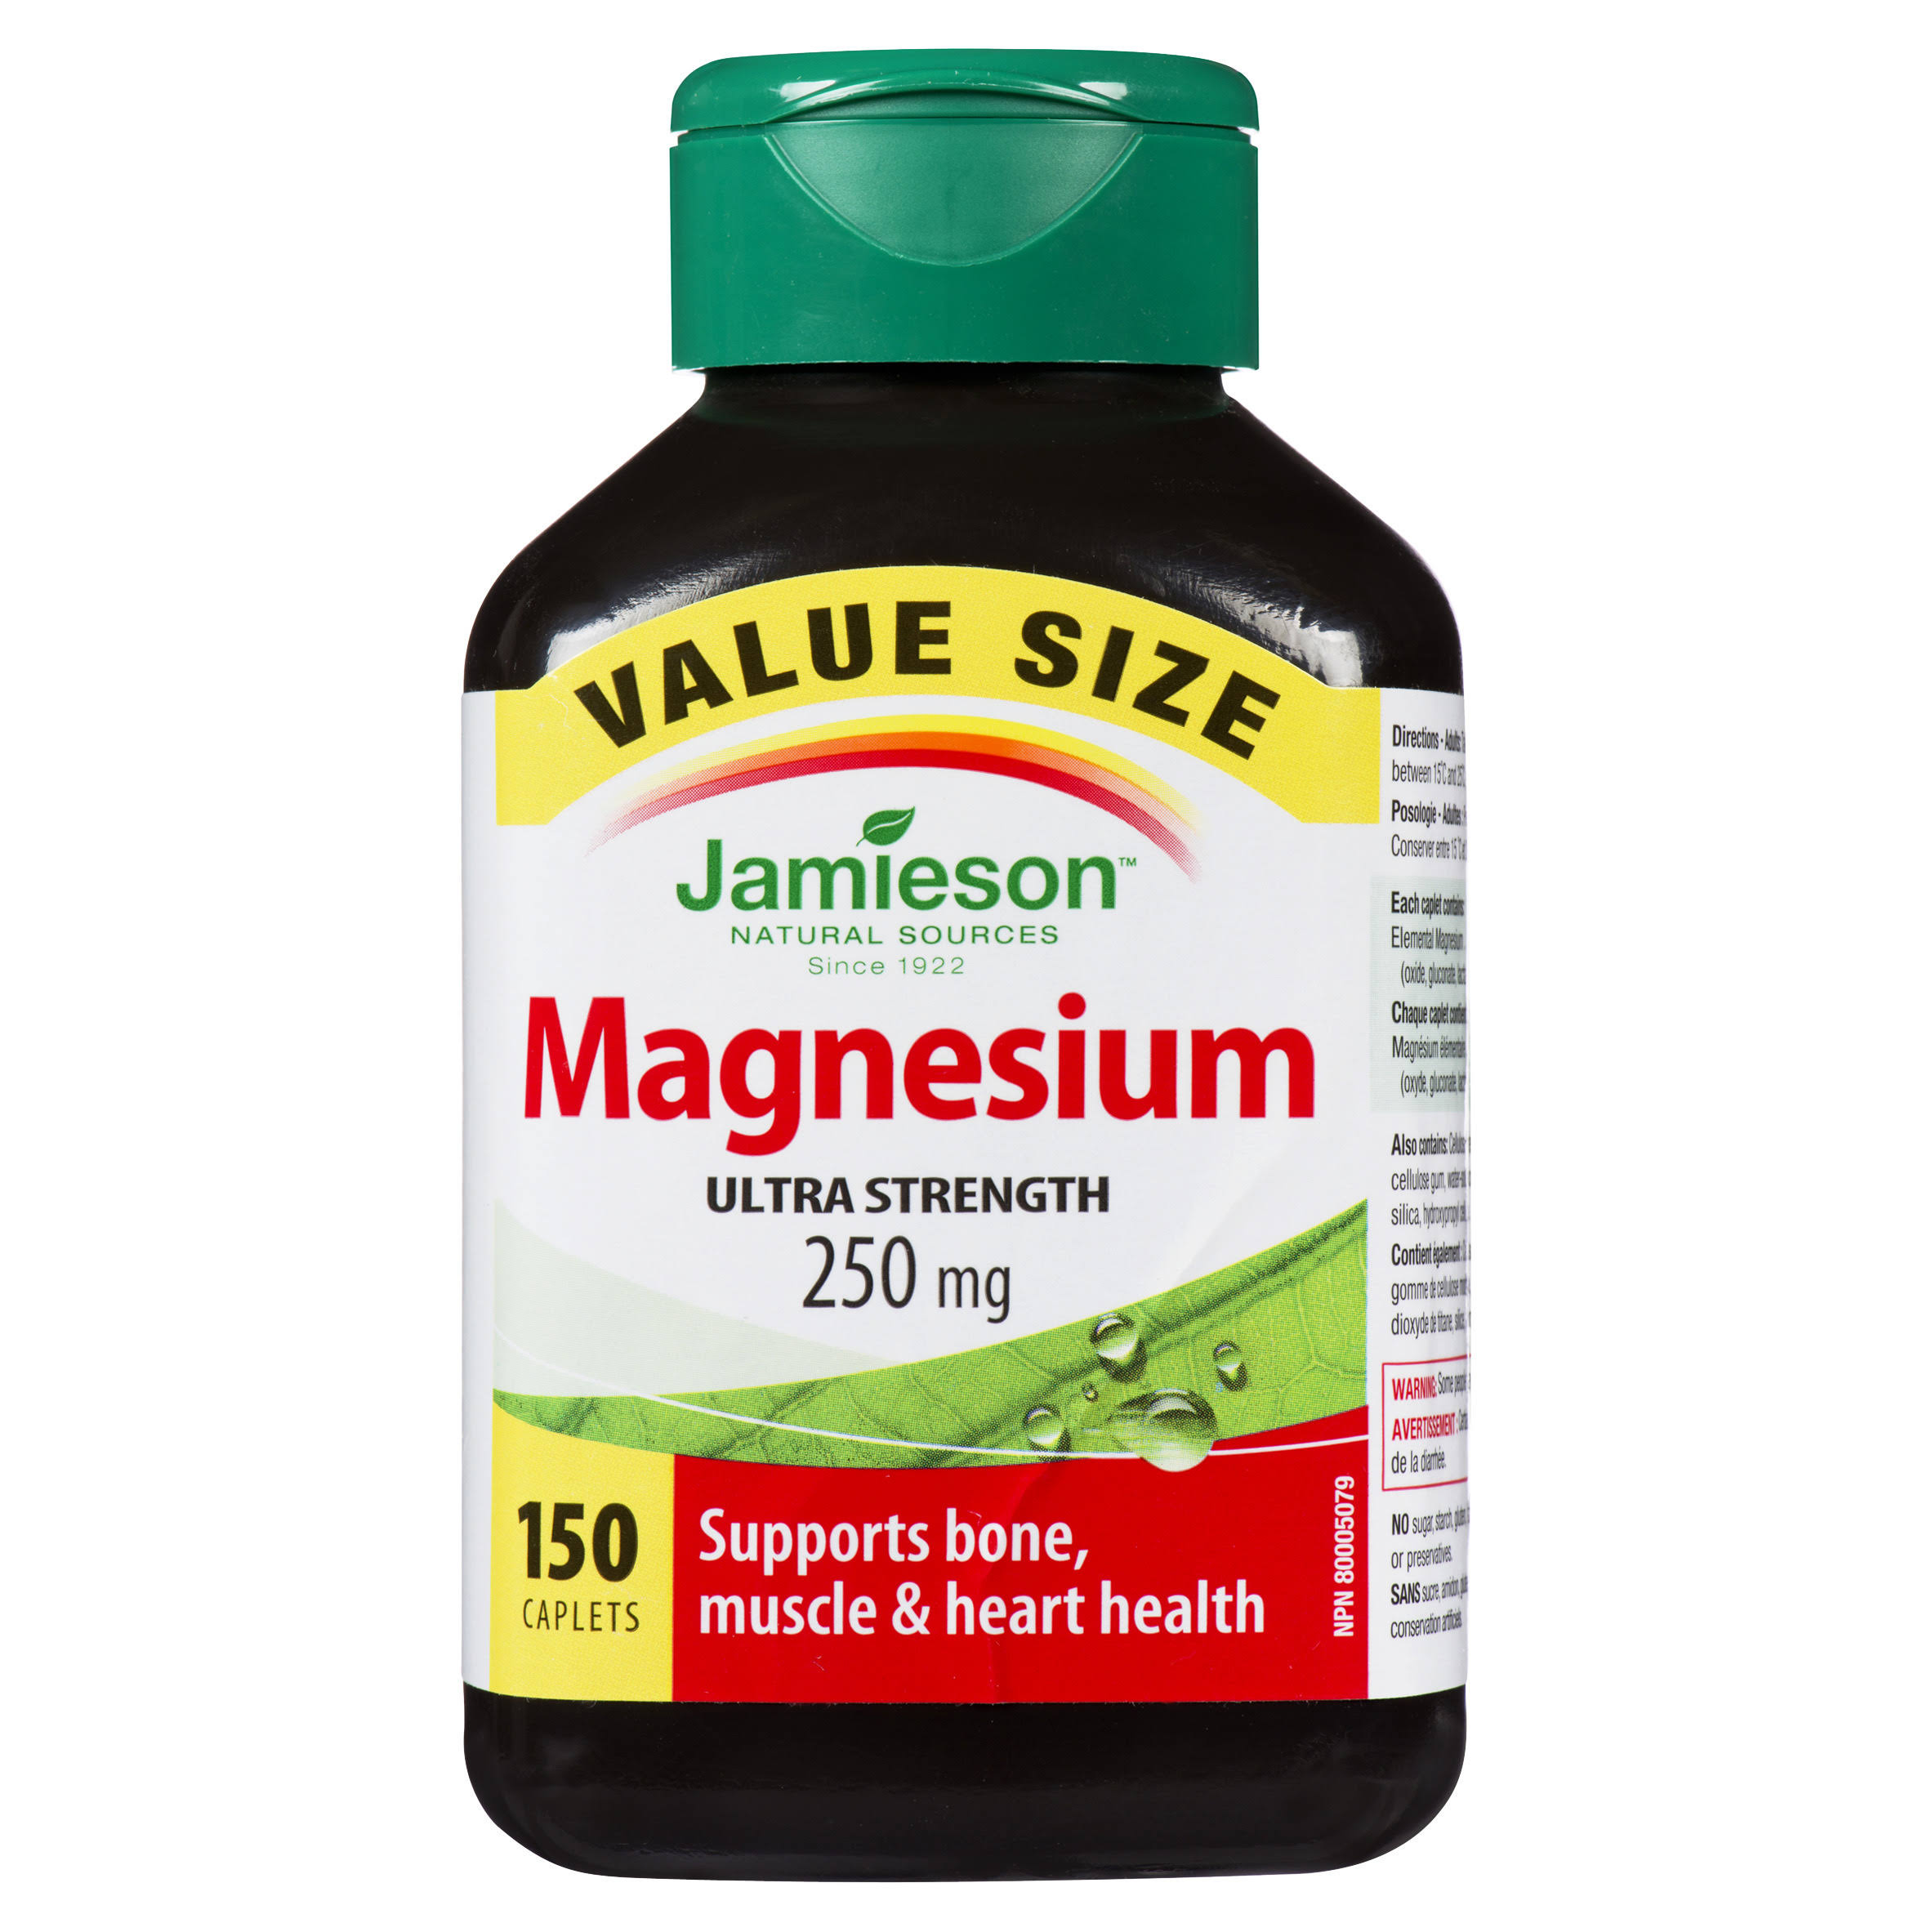 Jamieson Magnesium - 250mg, 150 Caplets